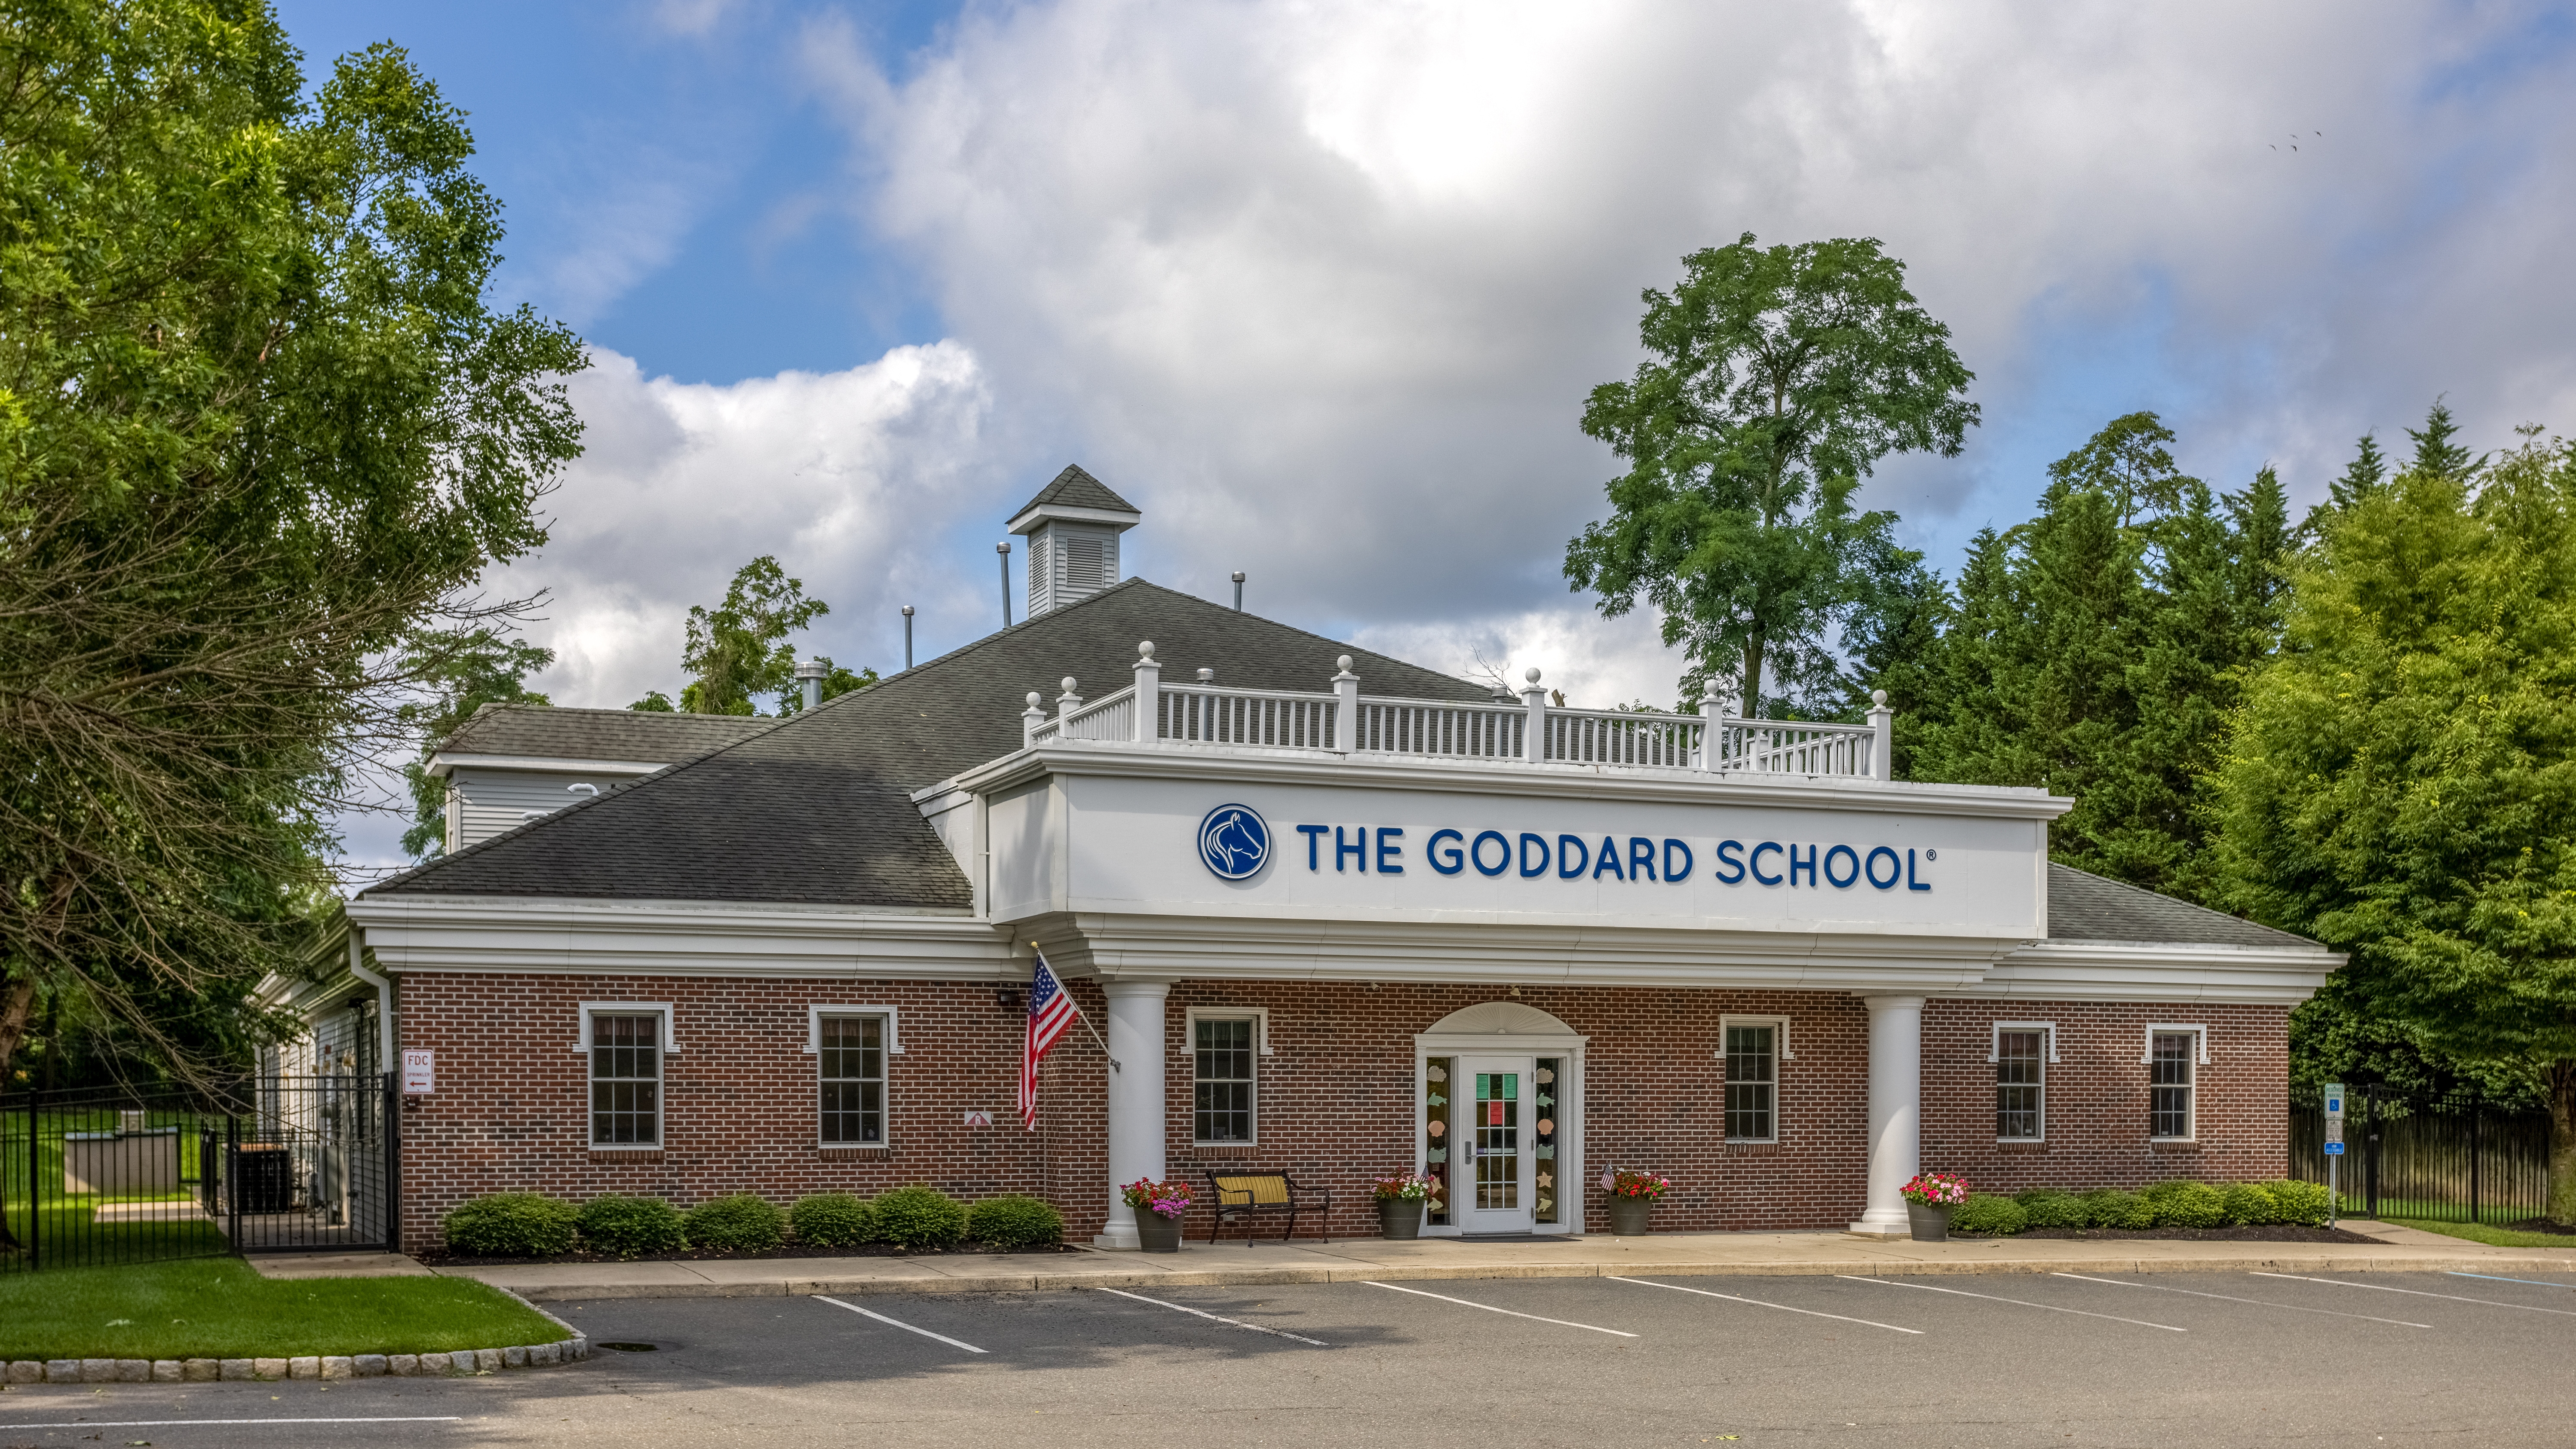 The Goddard School of Delran Moorestown (856)461-2250